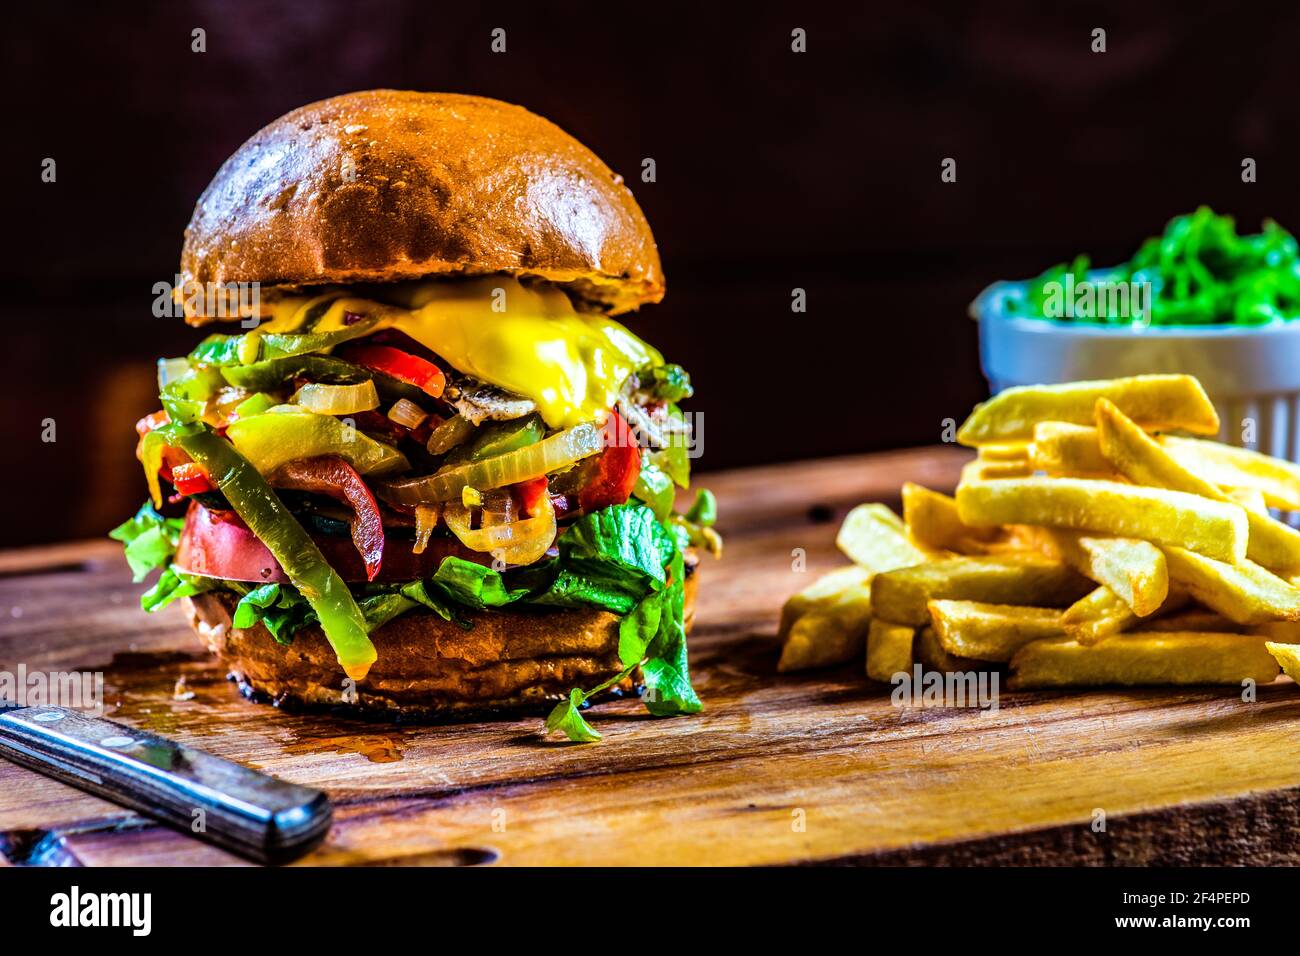 Hamburger végétarien fait maison avec frites Banque D'Images